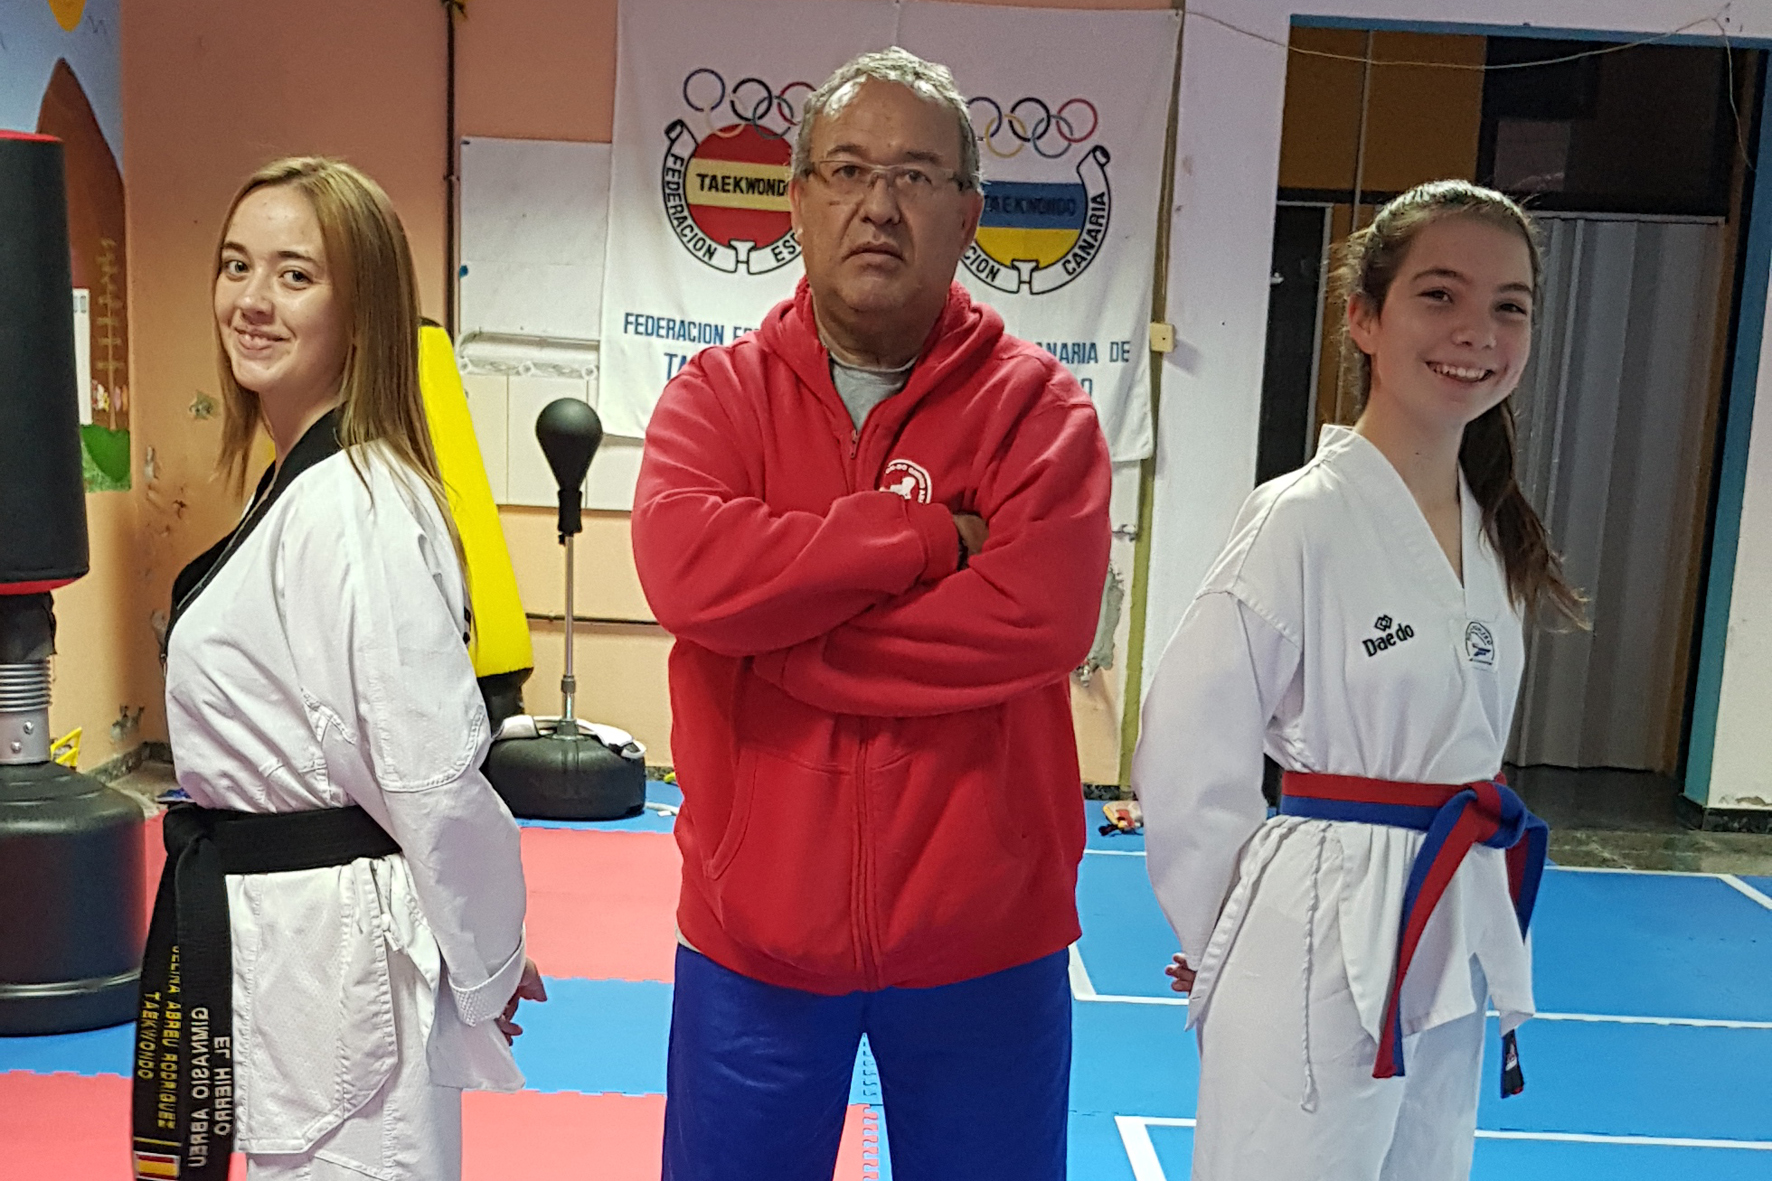 El Club de Taekwondo herreño Gimnasio Abreu participara en el Campeonato de España por Clubes 2021